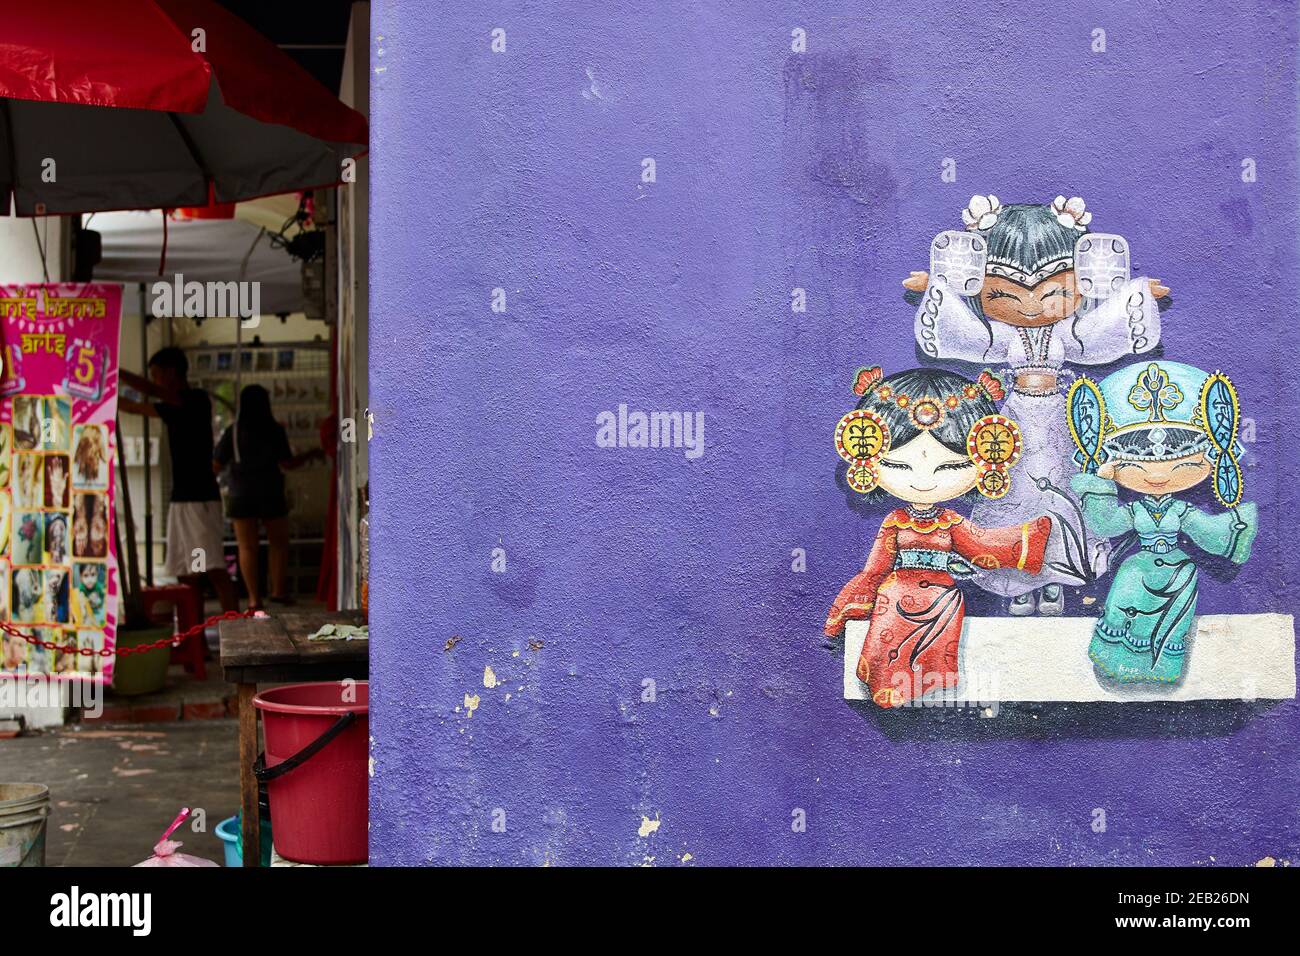 La scène d'art urbain de Penang a pris son envol en 2012 lorsque le George Town Festival a commandé un projet appelé Mirrors, une série de peintures murales d'un artiste lituanien Banque D'Images